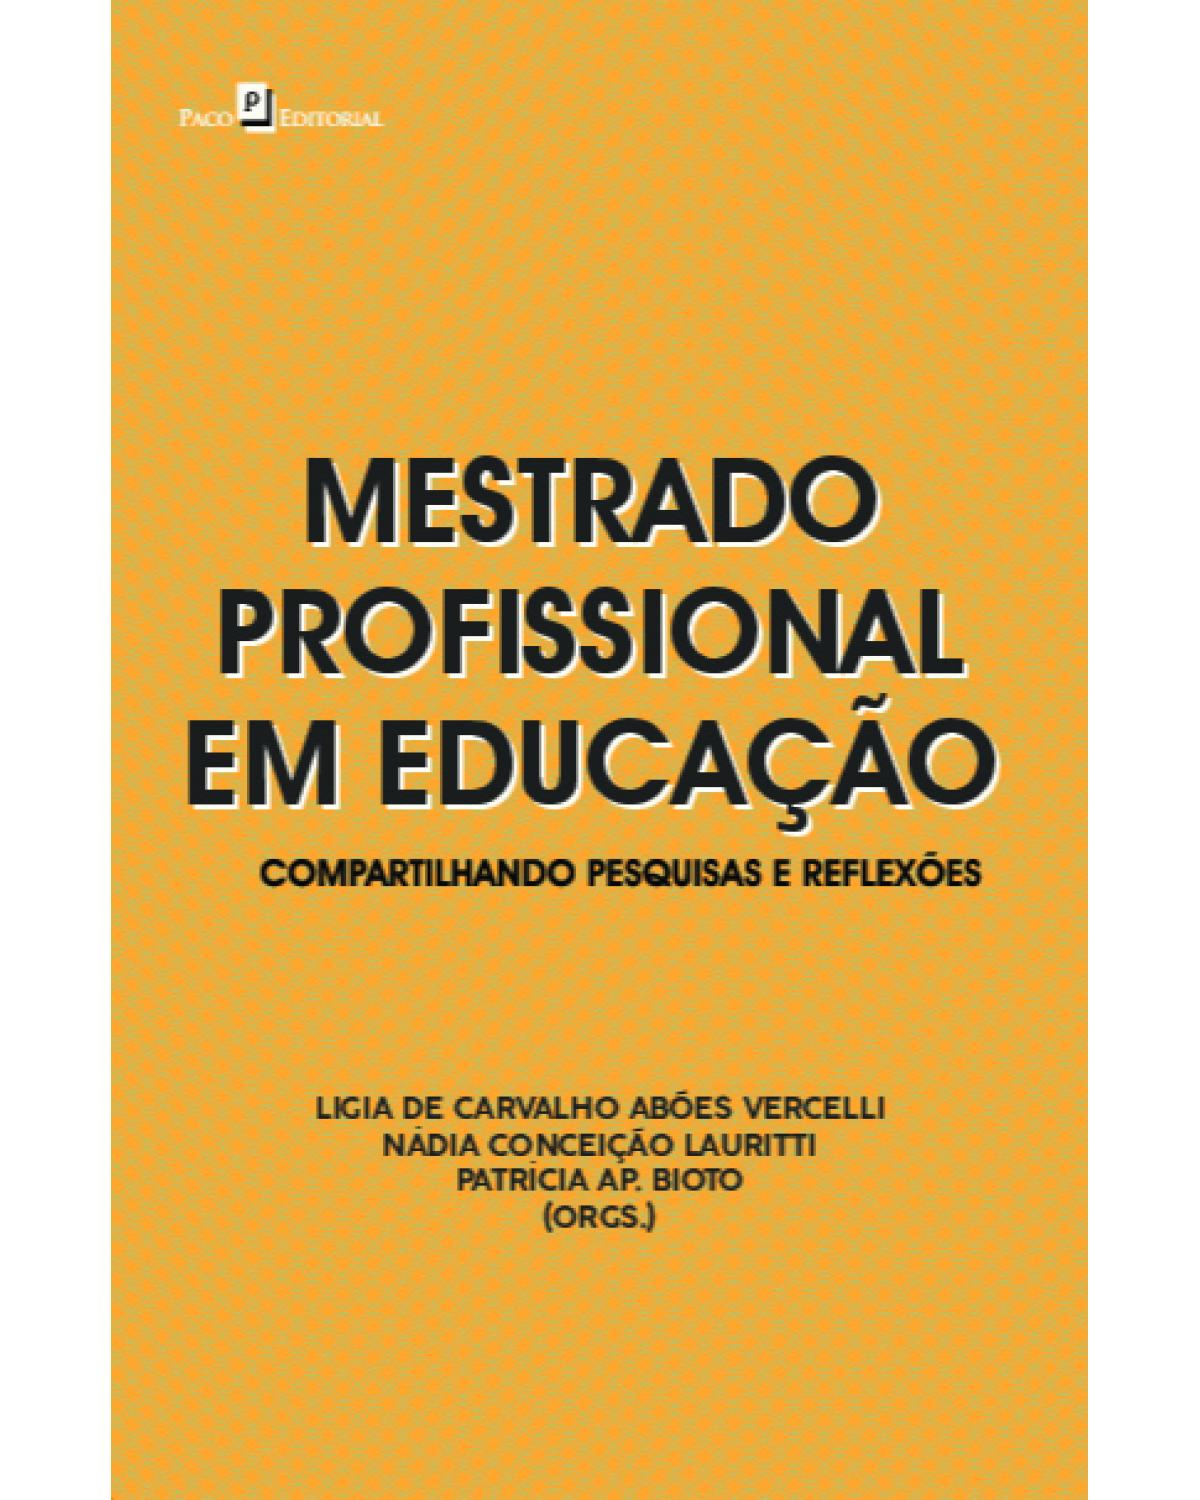 Mestrado profissional em educação - compartilhando pesquisas e reflexões - 1ª Edição | 2021